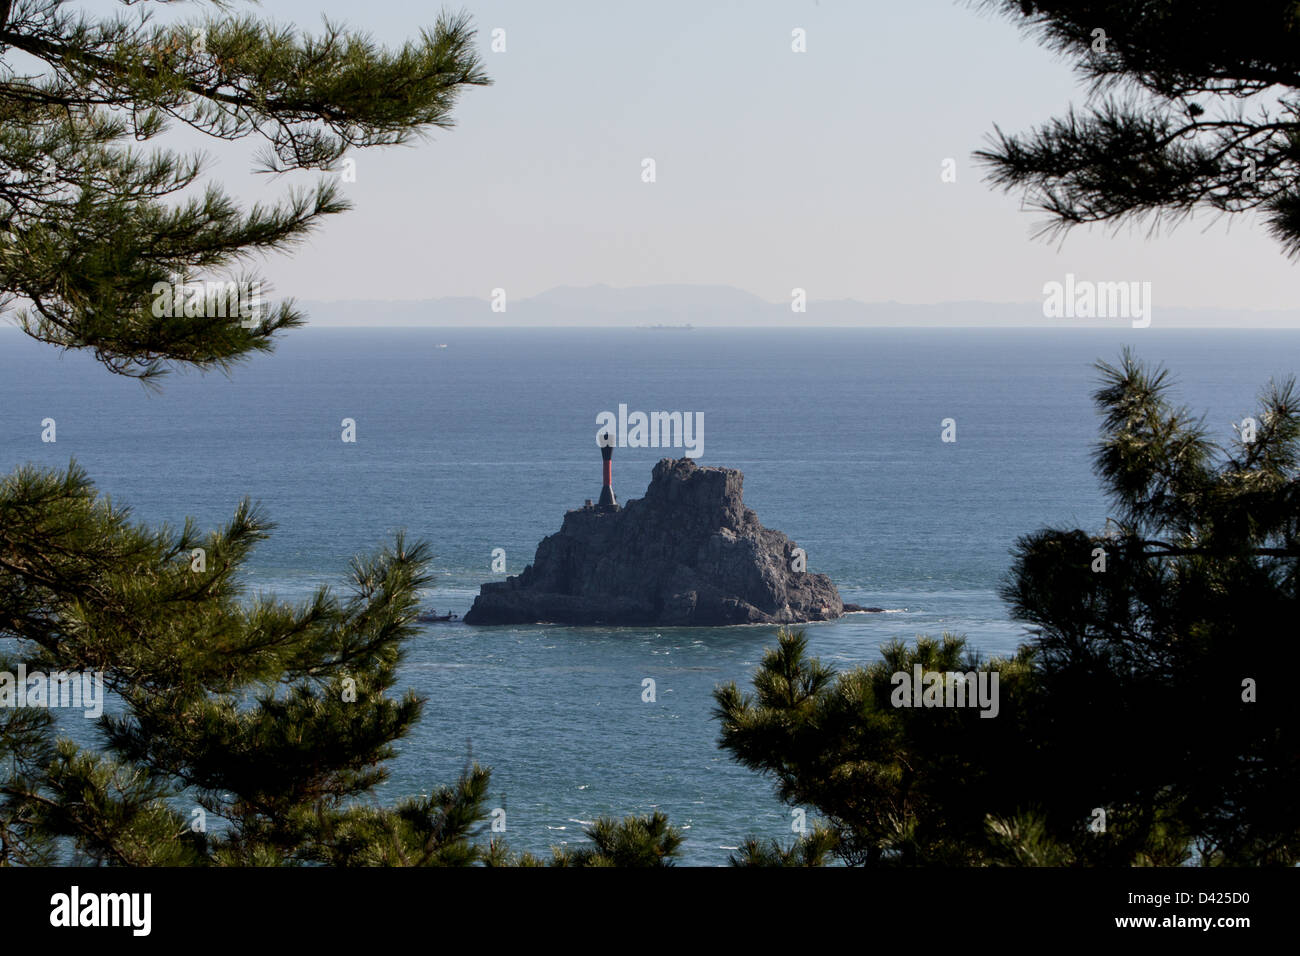 Dans l'arrière-plan vous pouvez voir les îles japonaises de Tsushima vu de la ville de Busan en Corée du Sud Banque D'Images